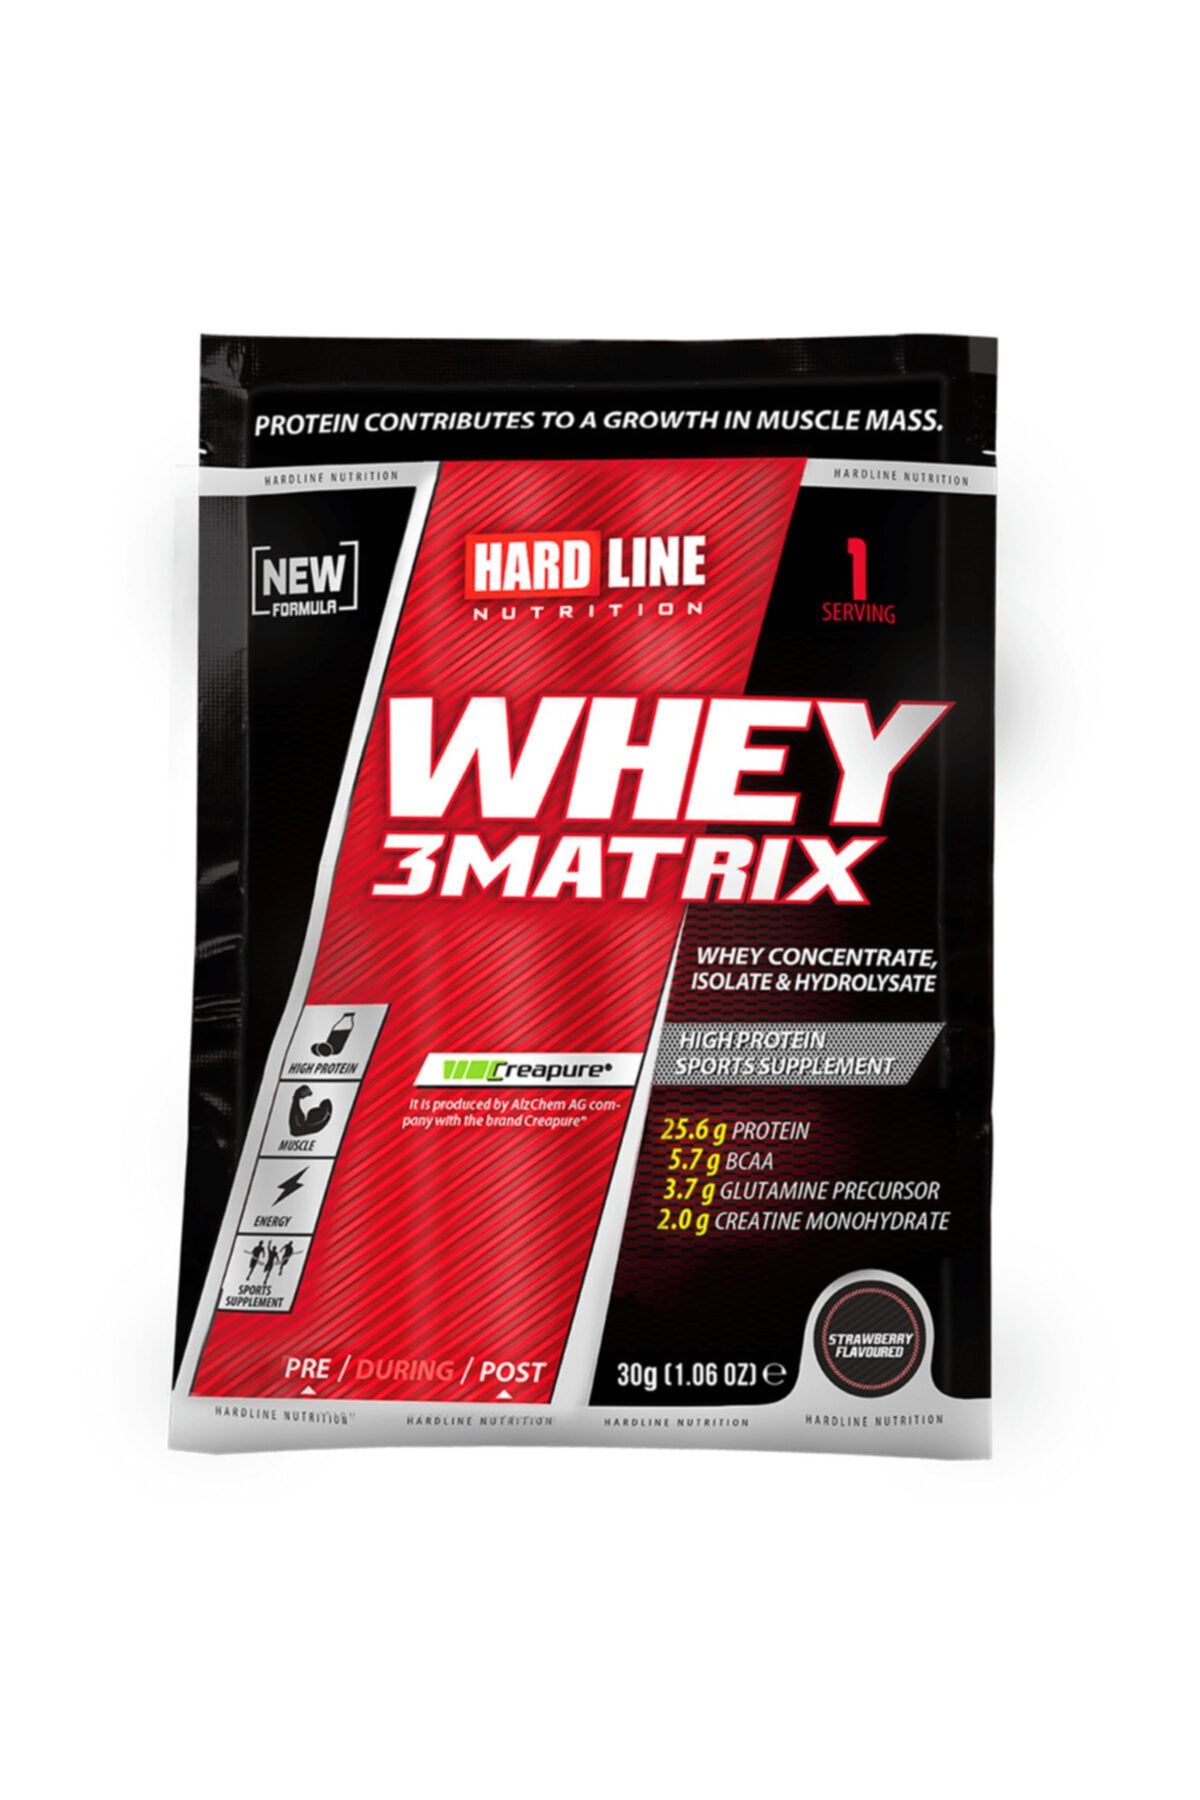 Hardline Whey 3matrix 30 gr 1 Adet Çilek Tek Kullanımlık Saşe Protein Tozu